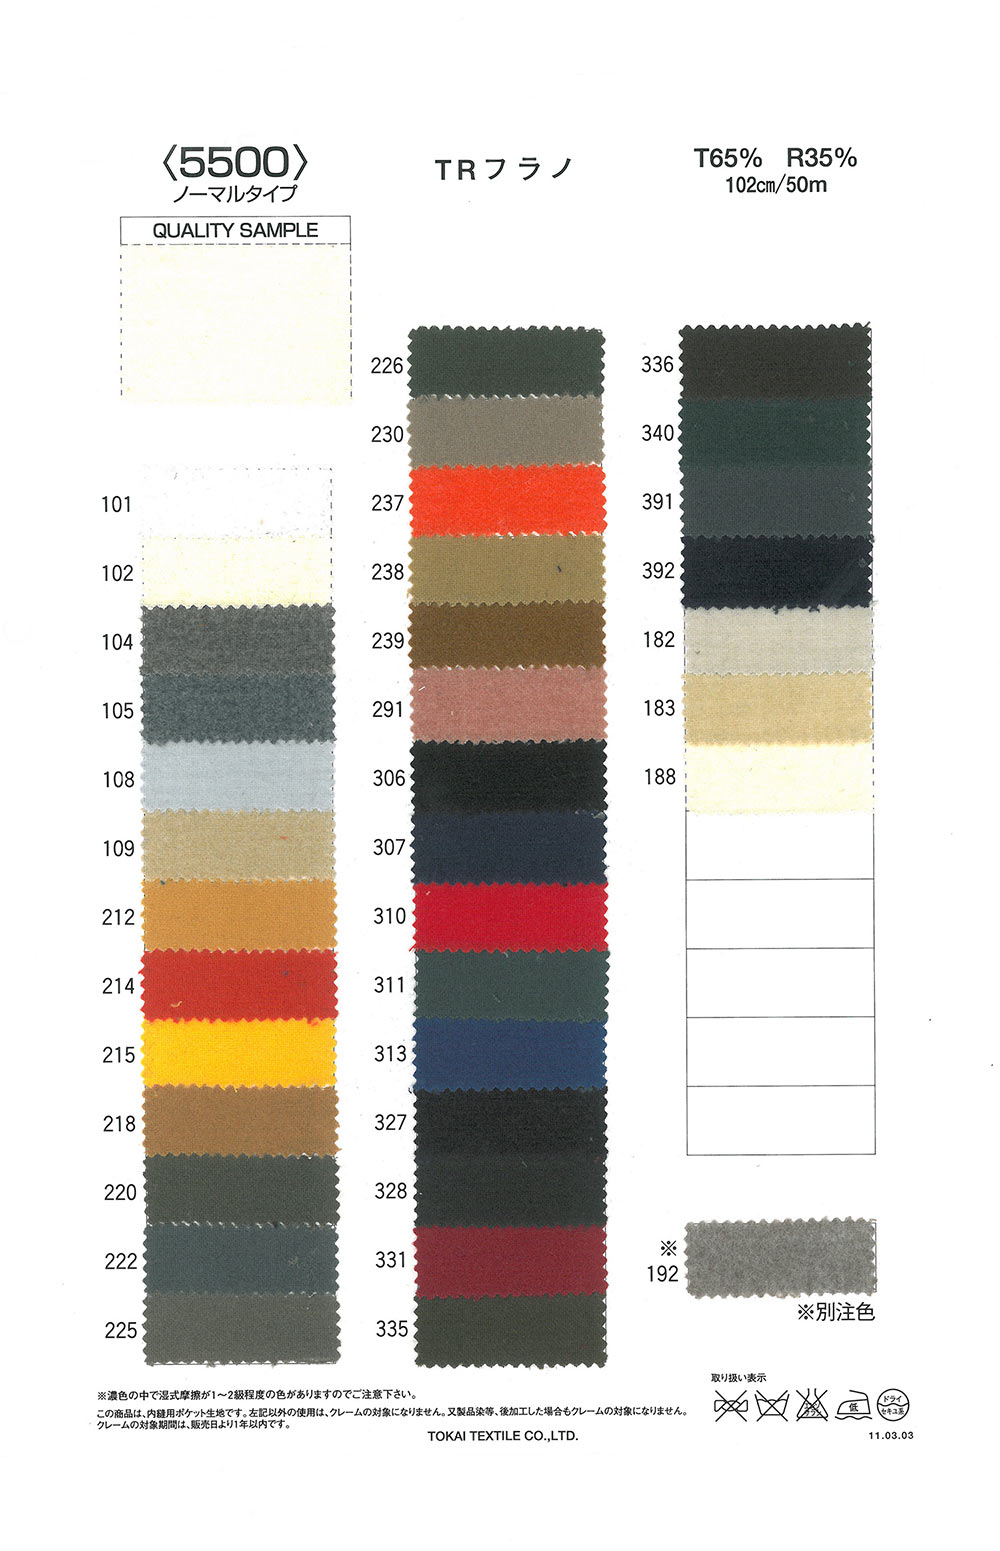 TR5500 TR Vải Dạ Flannel 5500 (Loại Bình Thường)[Vải Lót Túi] Tokai Textile